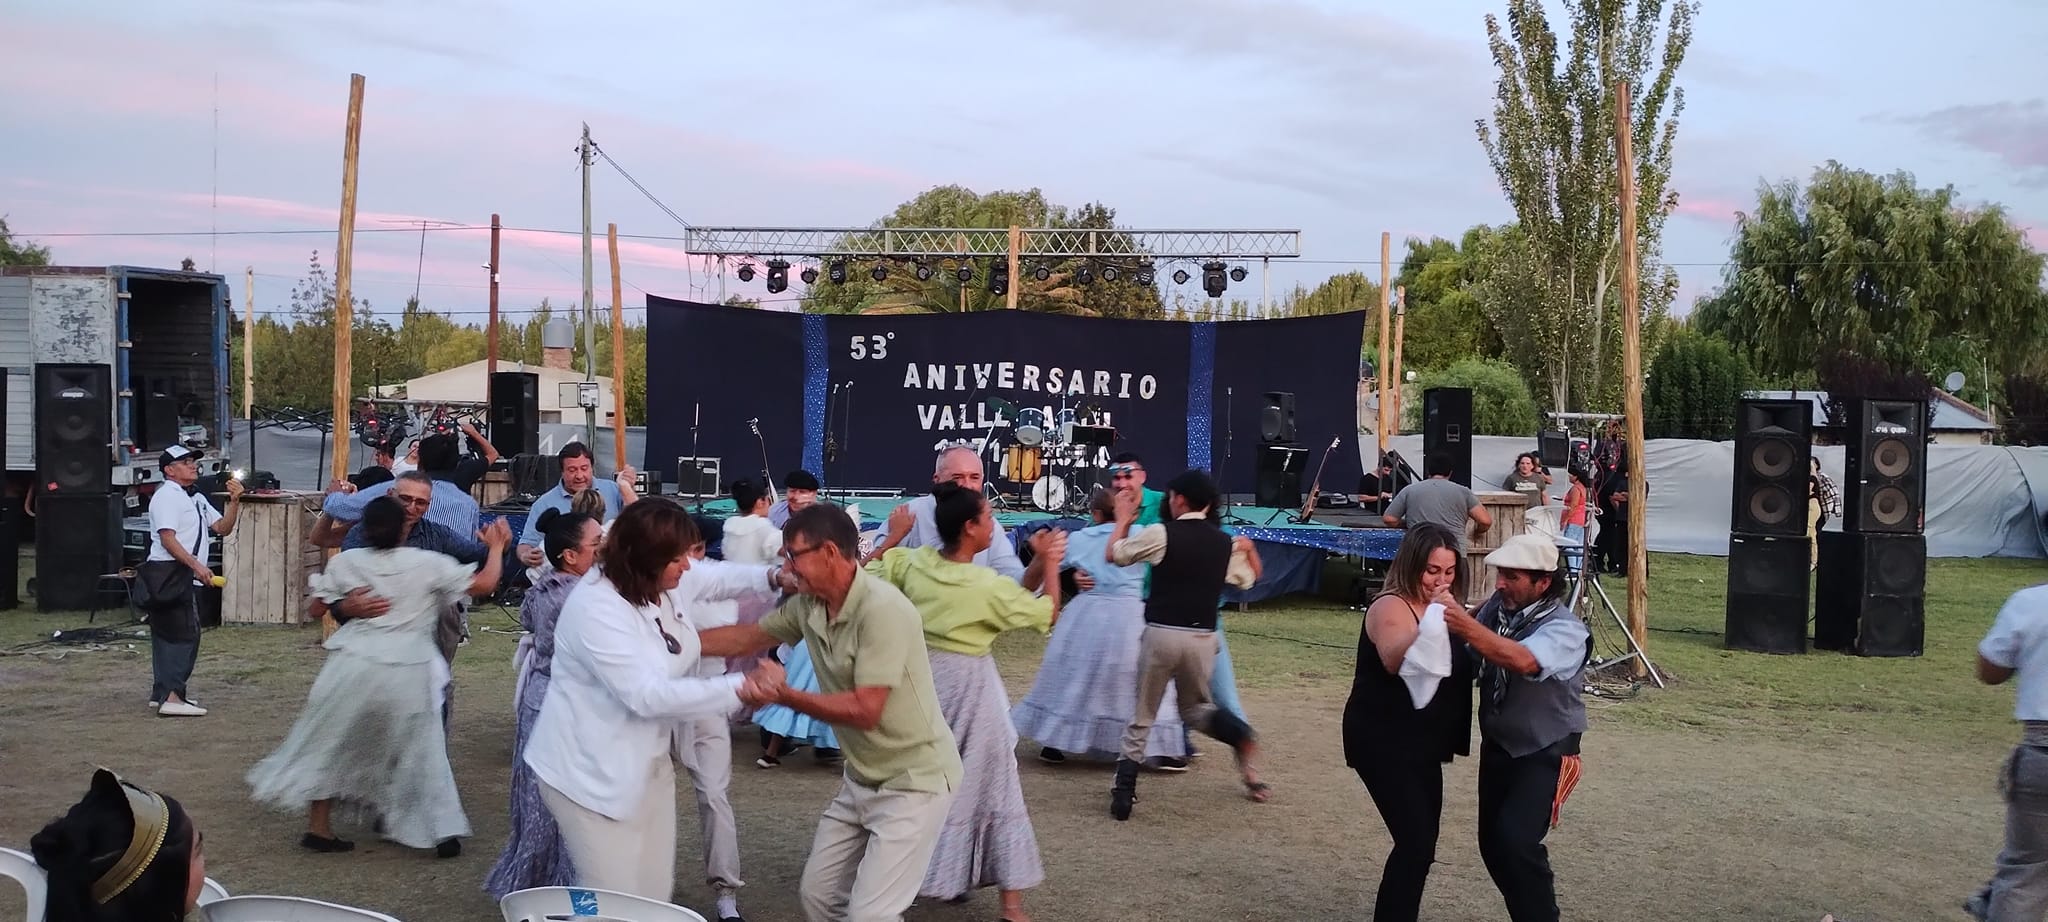 Con distintas propuestas, Valle Azul celebró su 53º aniversario